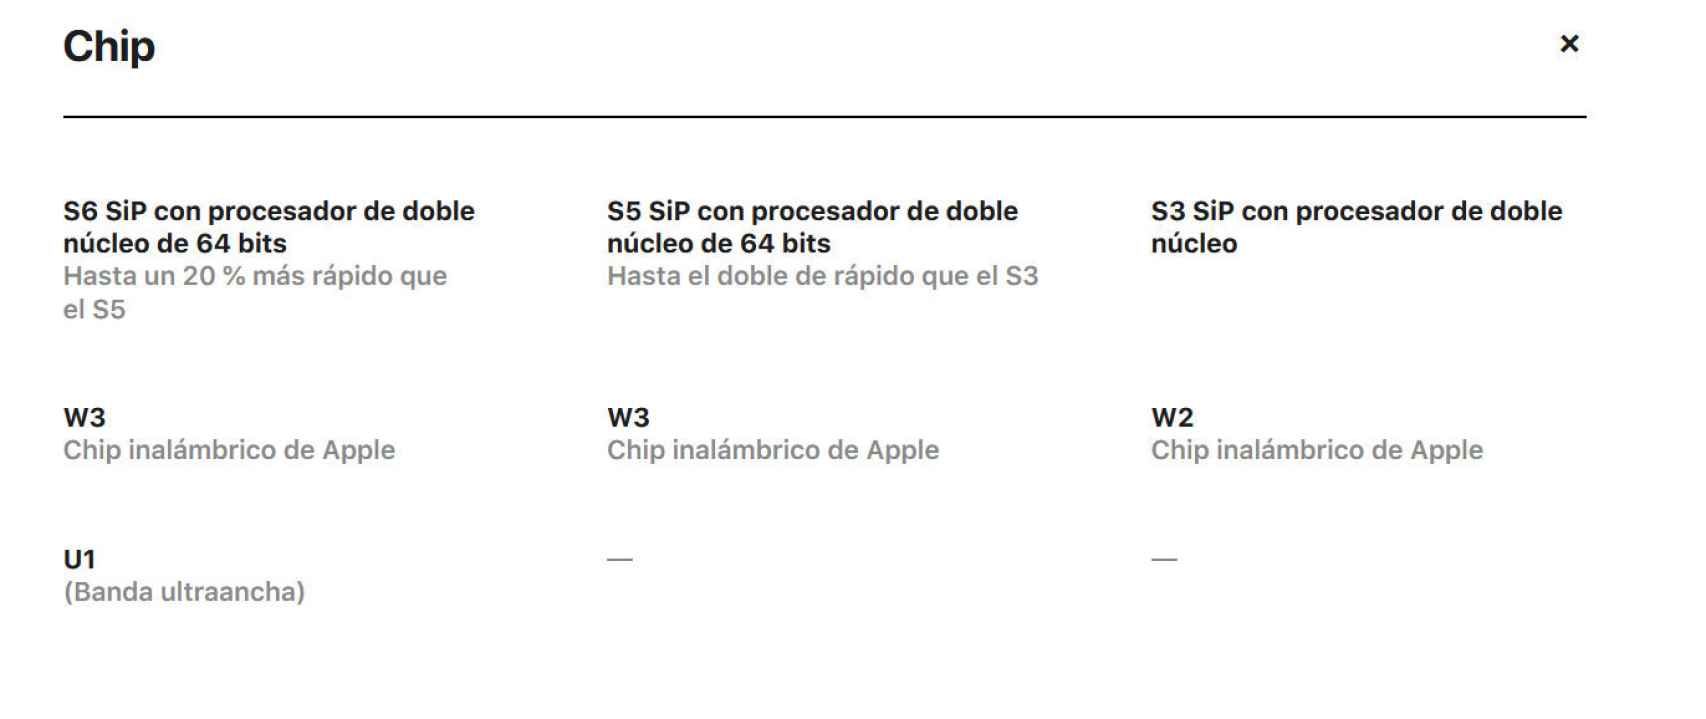 El chip U1 aparece en la página de Apple pero no se explica para qué sirve